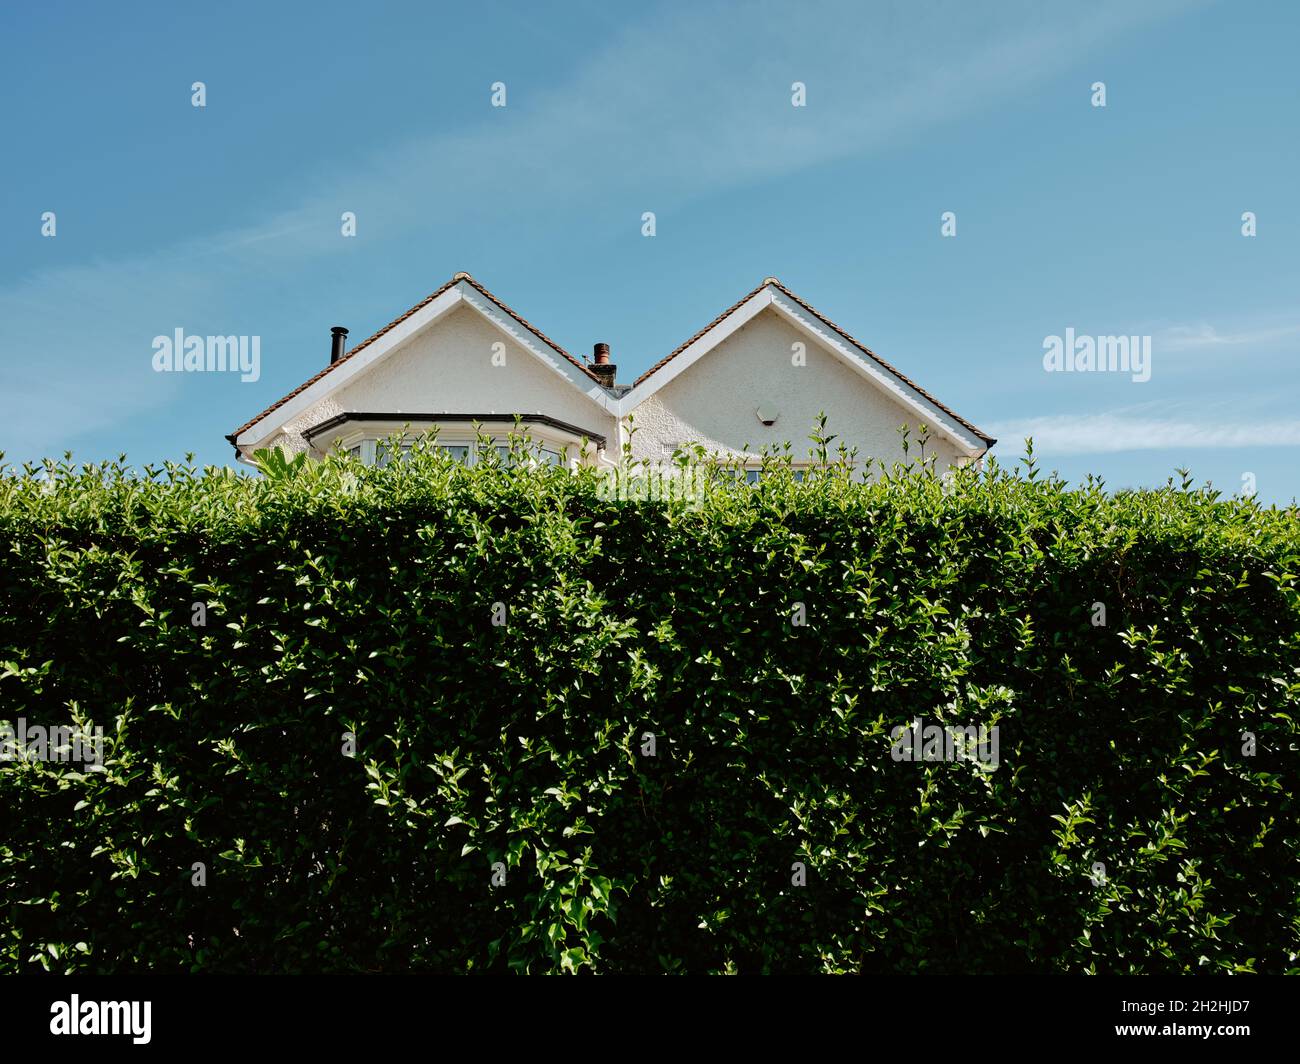 Eine typische M-förmige / Doppel-schräg / doppelt Giebeldach Vorstadthaus Architektur halb versteckte Eigenschaft hinter einem hohen grünen Garten Hecke & blauen Himmel. Stockfoto